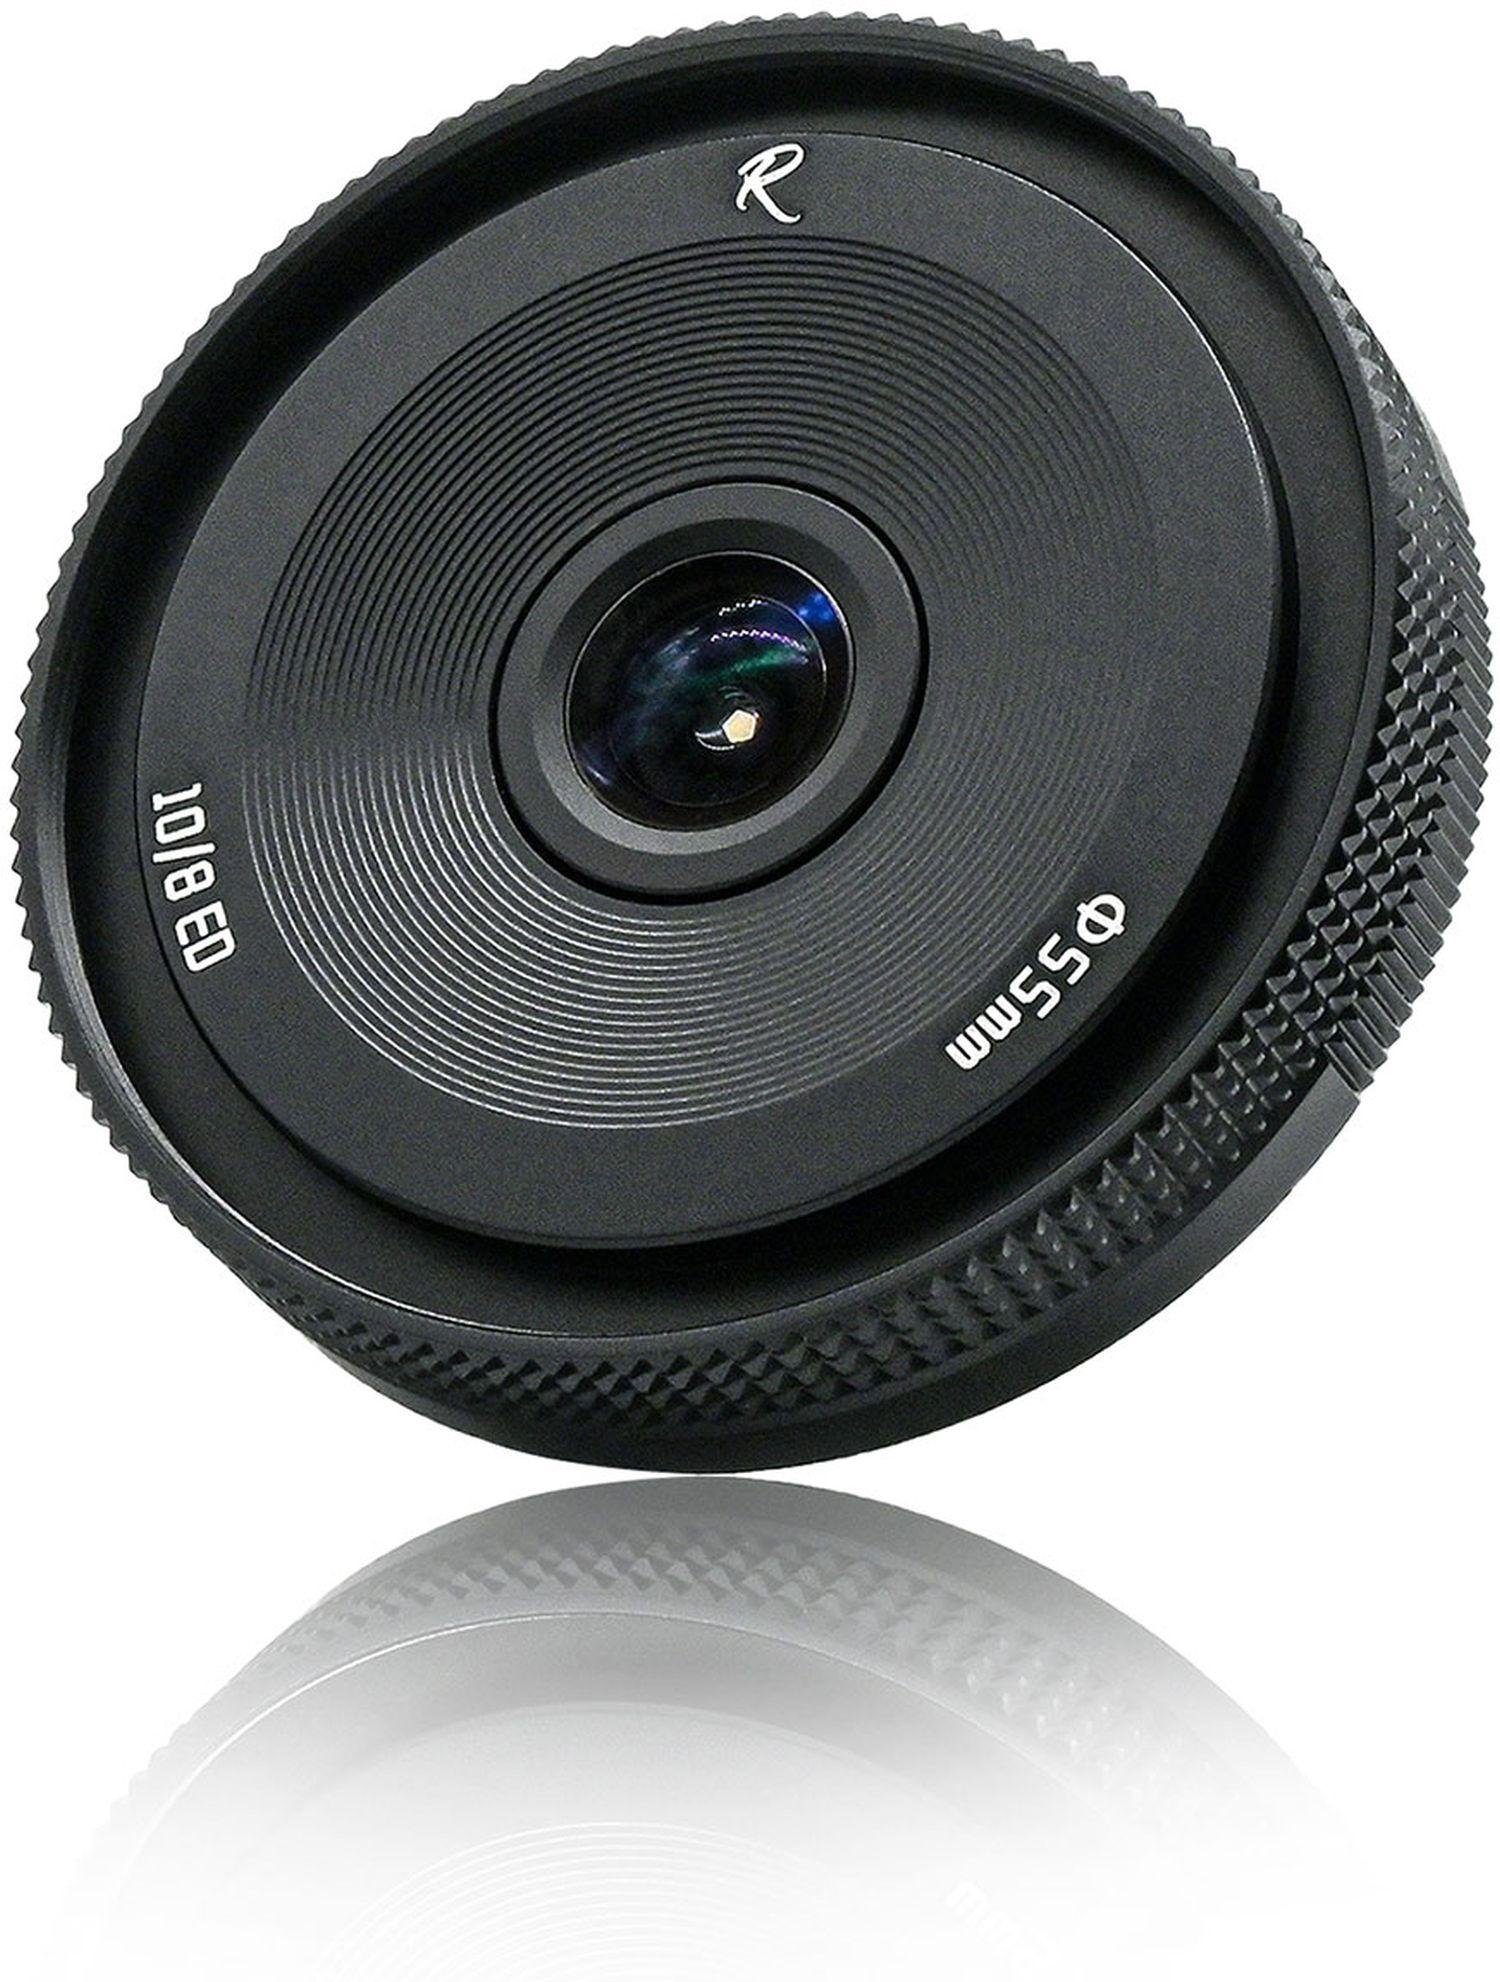 10mm AstrHori Objektiv für Sony f8 E-Mount II